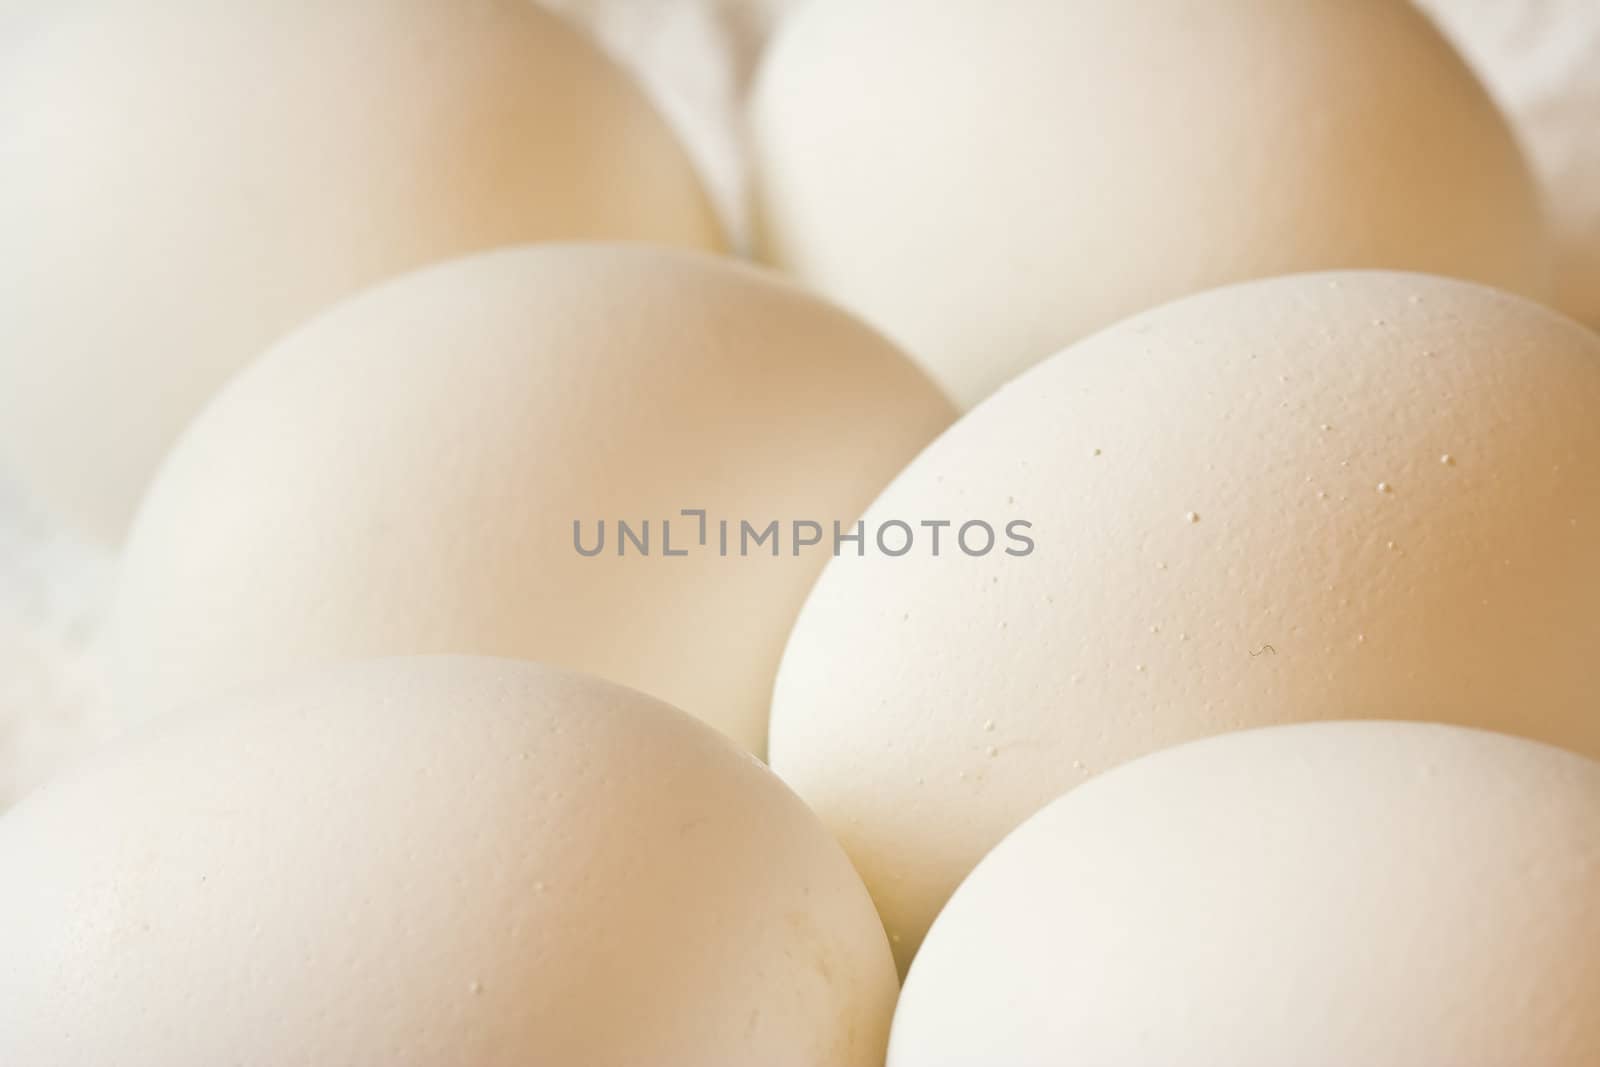 half a dozen eggs on a white napkin nice detail